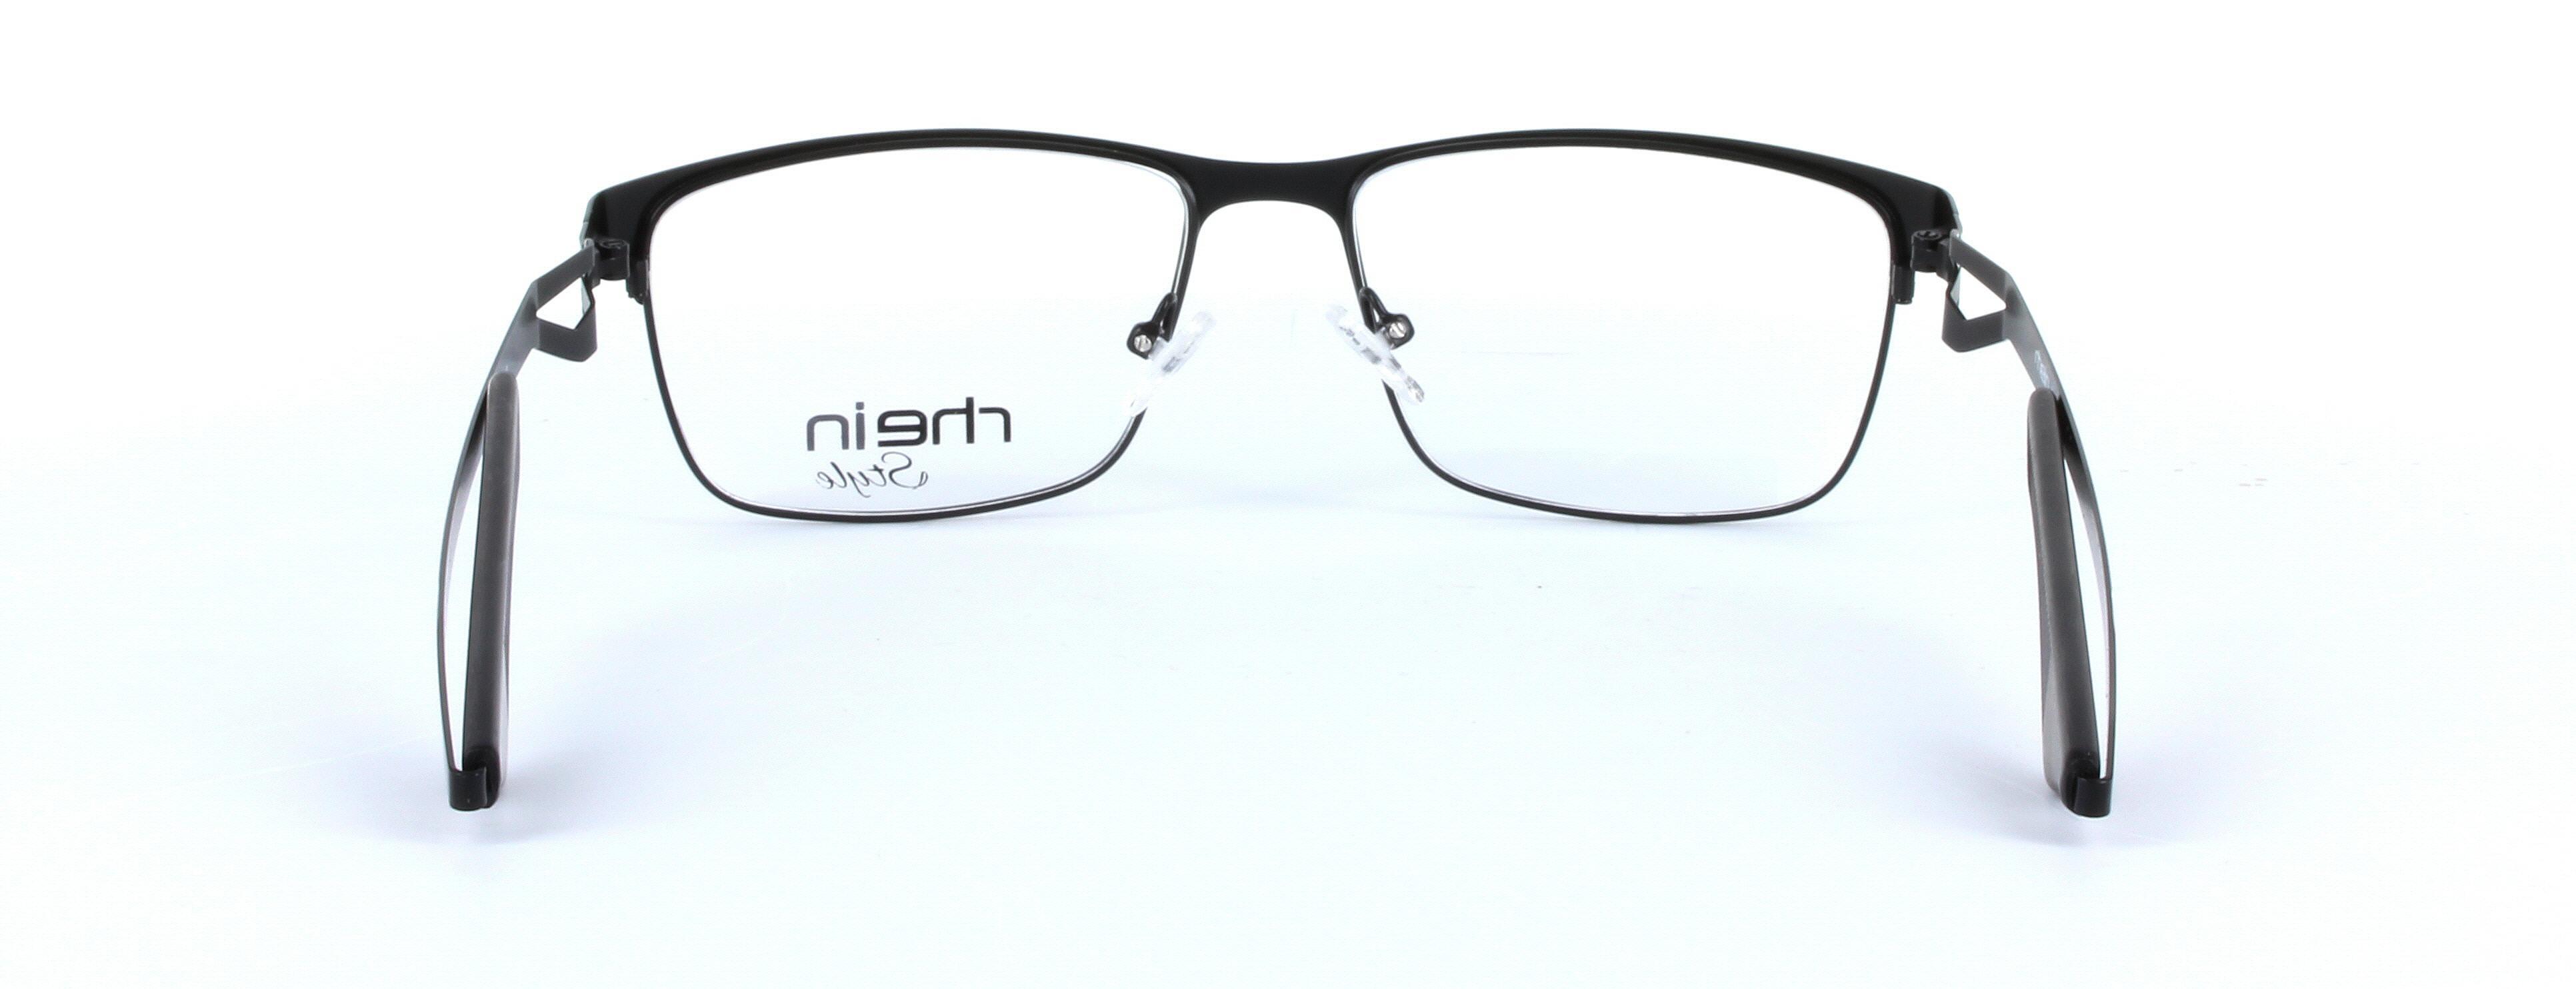 Carl Black Full Rim Round Metal Glasses - Image View 3